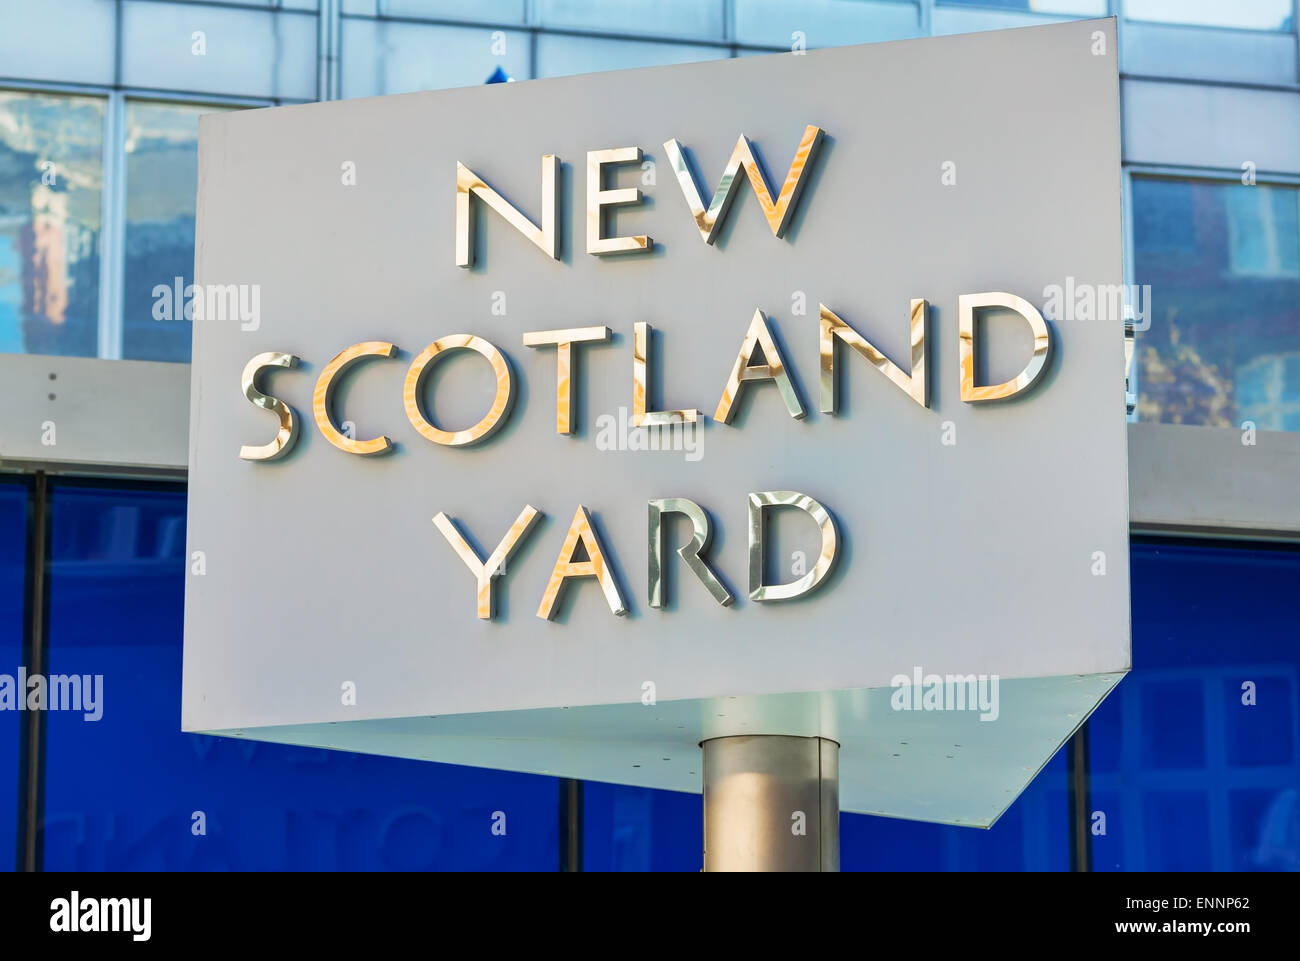 LONDON - APRIL 12: Berühmte New Scotland Yard Zeichen am 12. April 2015 in London, Vereinigtes Königreich. Stockfoto